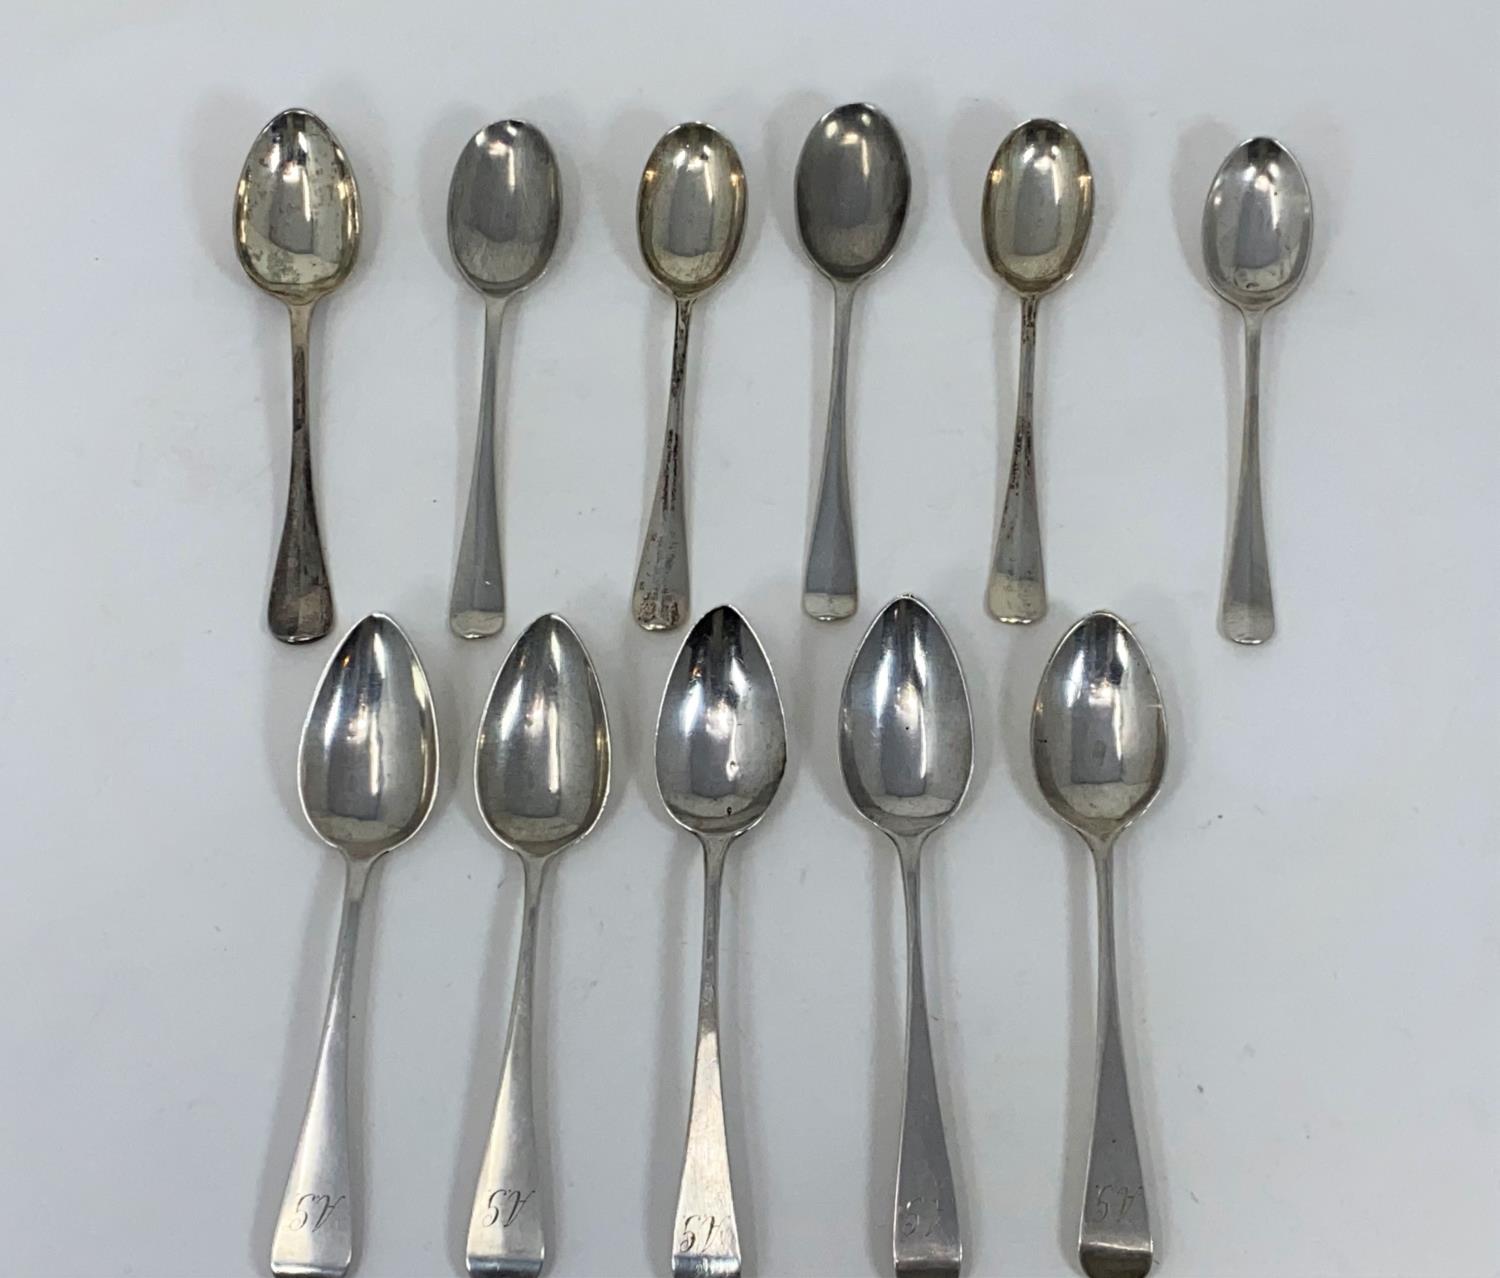 A Georgian matched set of 6 teaspoons and 7 rat tail teaspoons, various dates, 5 oz